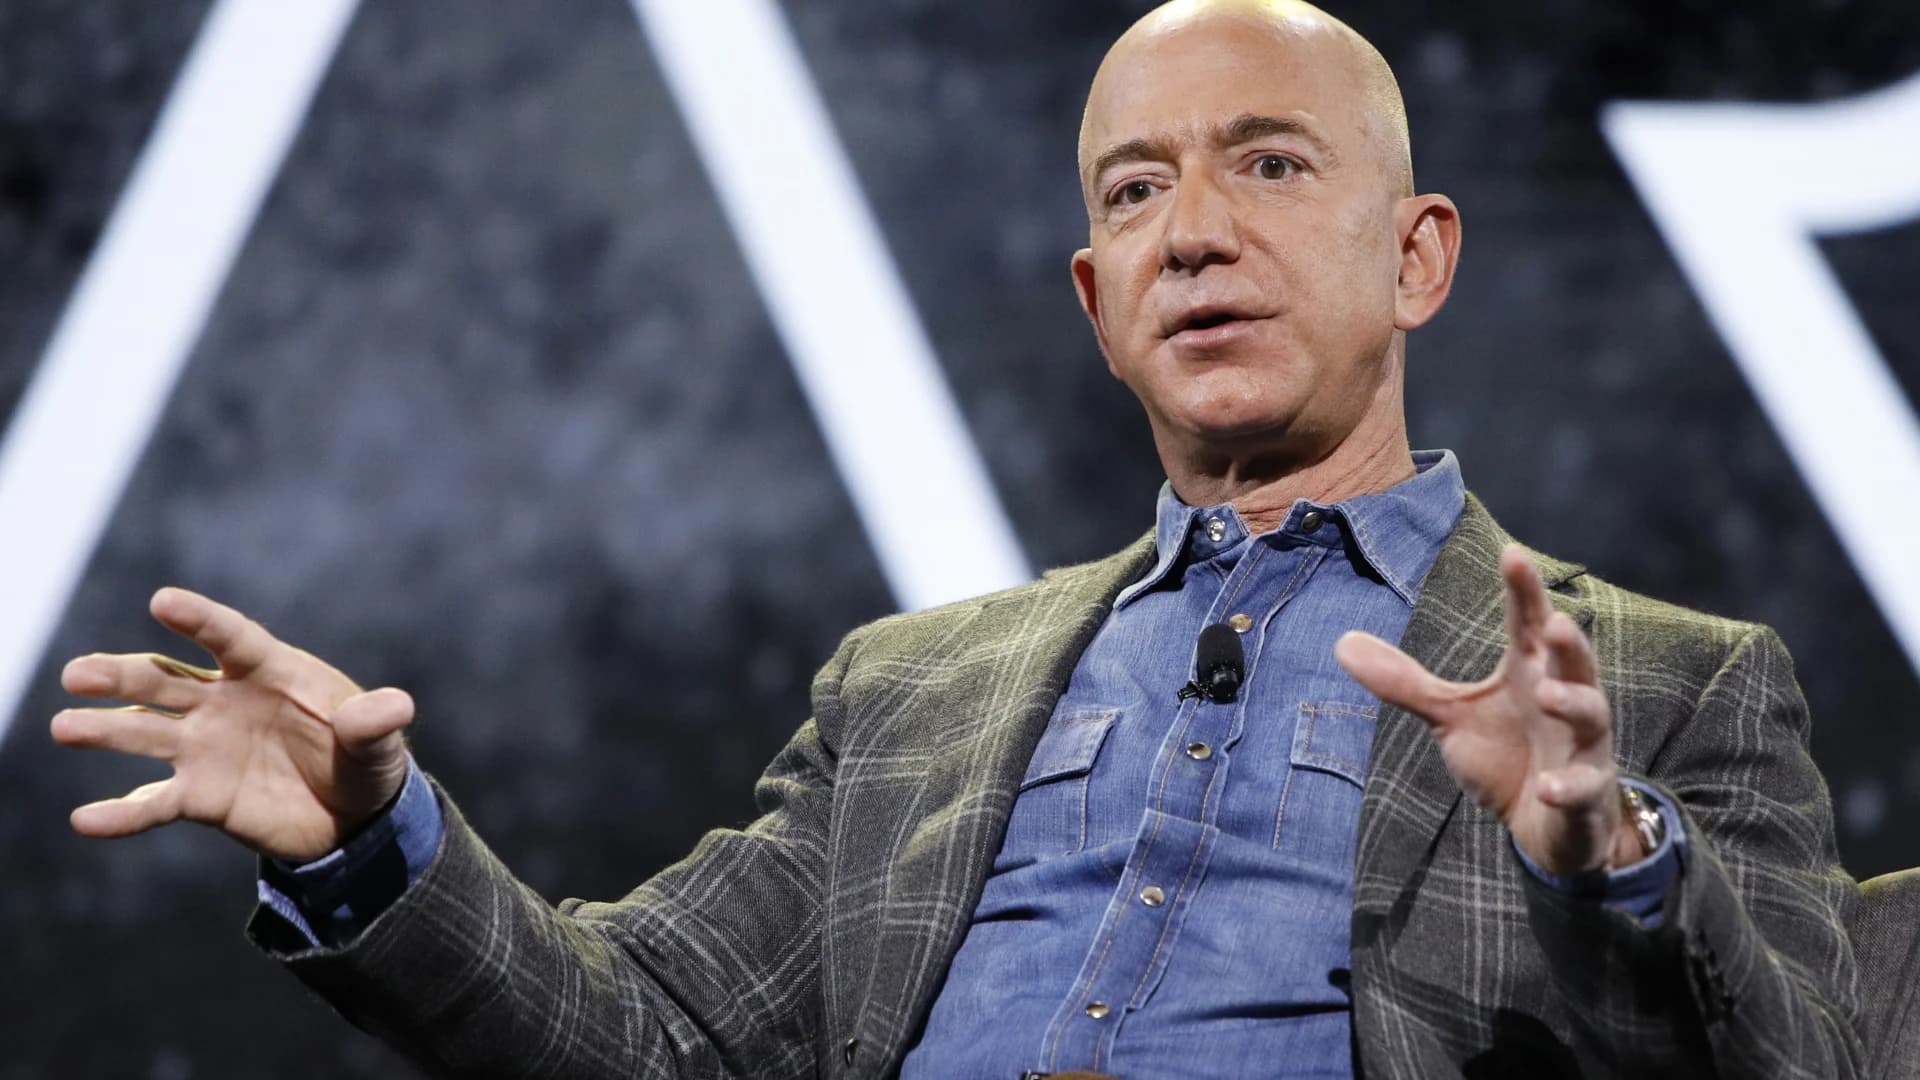 Jeff Bezos plans to go to space aboard Blue Origin flight in July